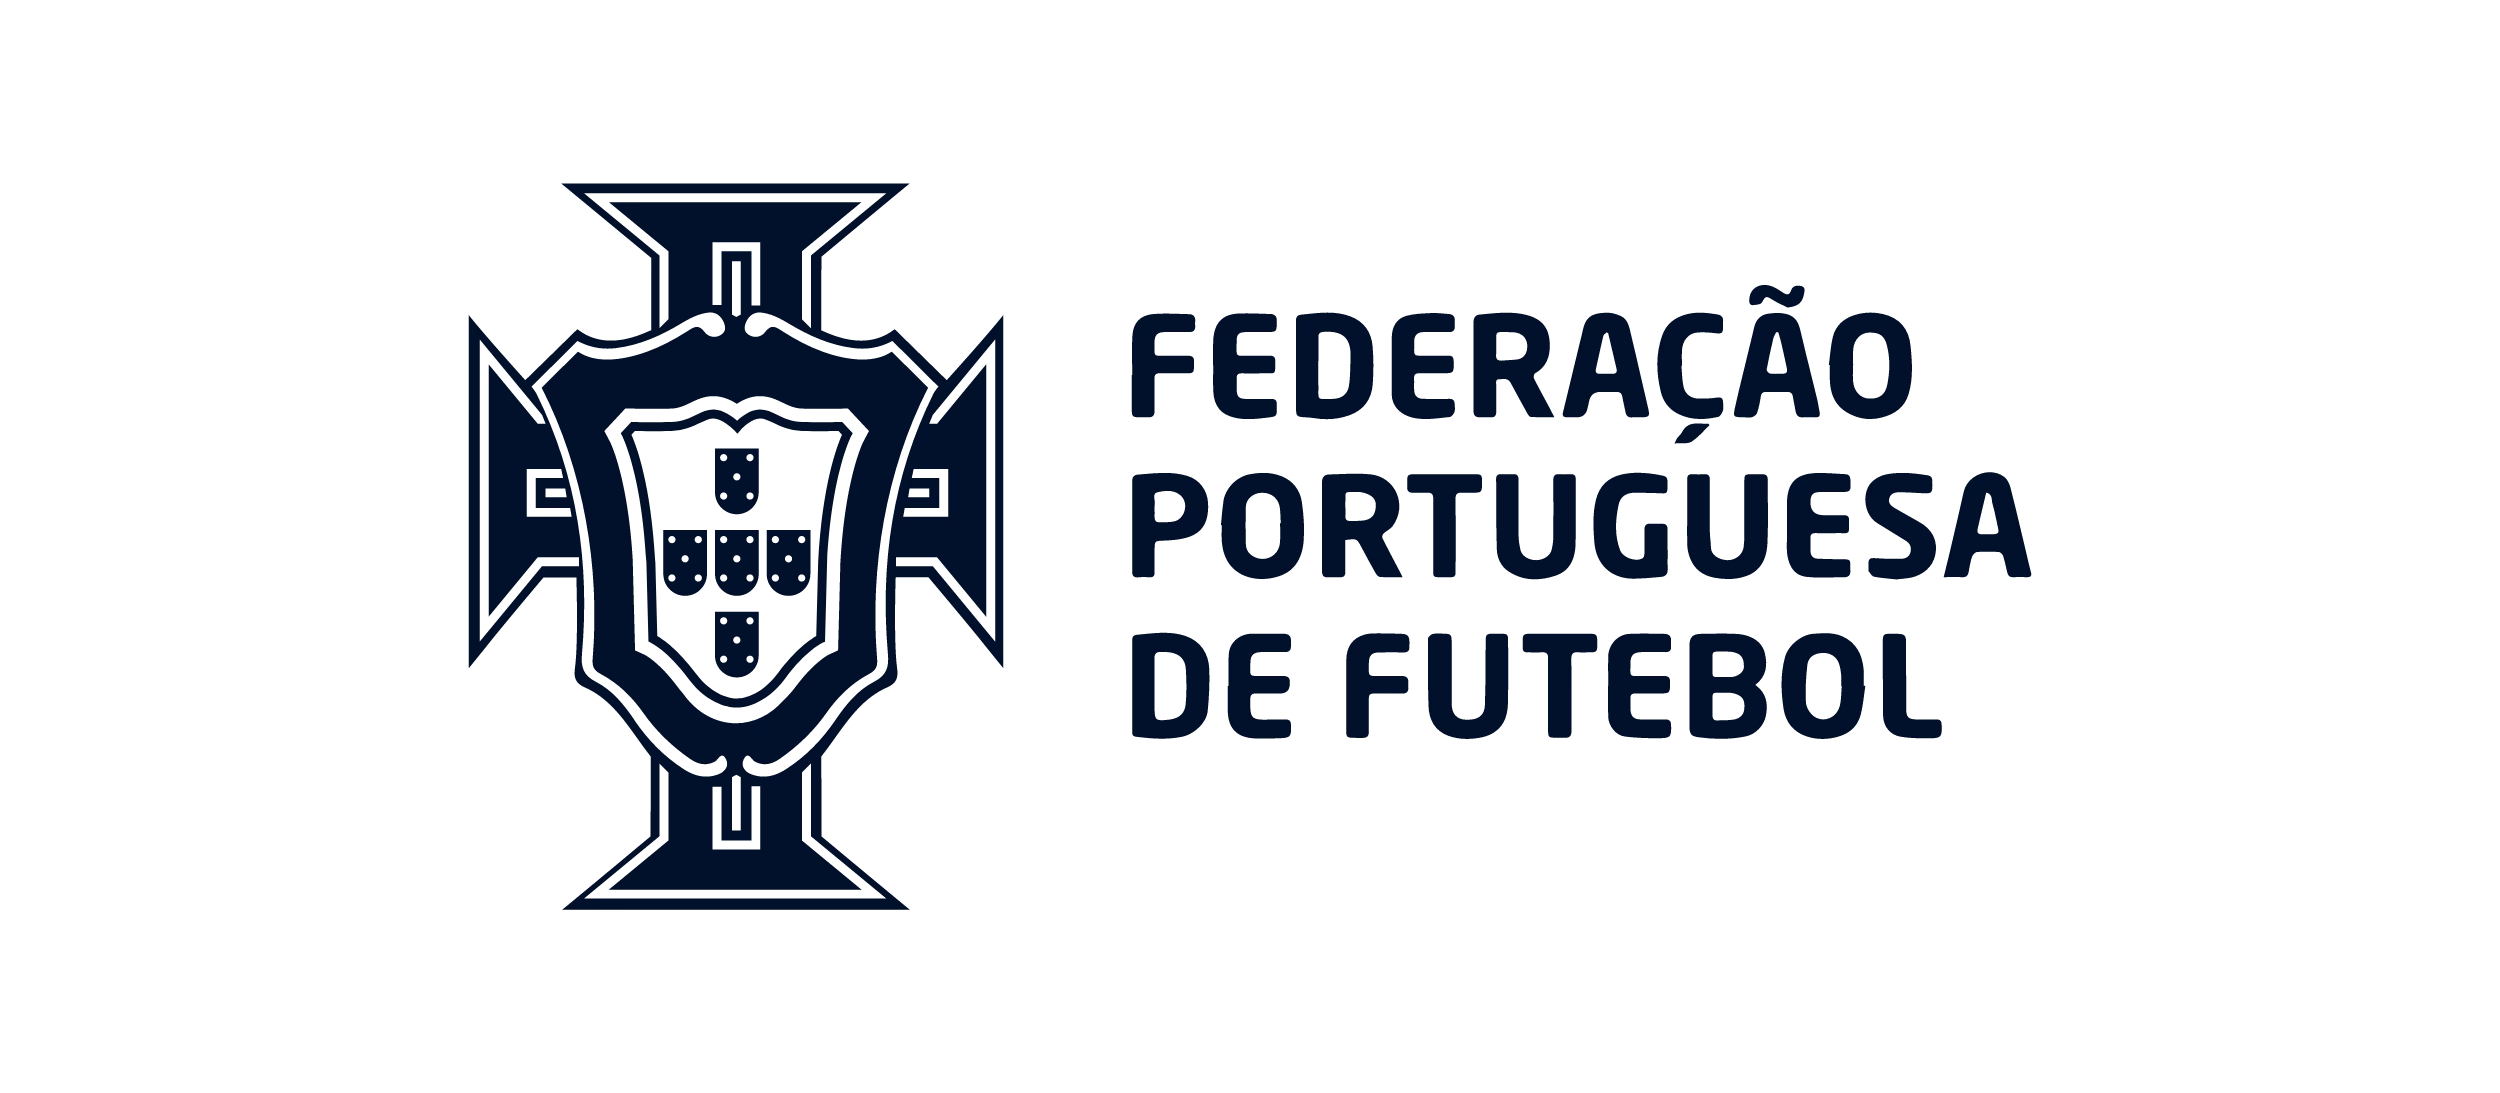 Federaçao logo